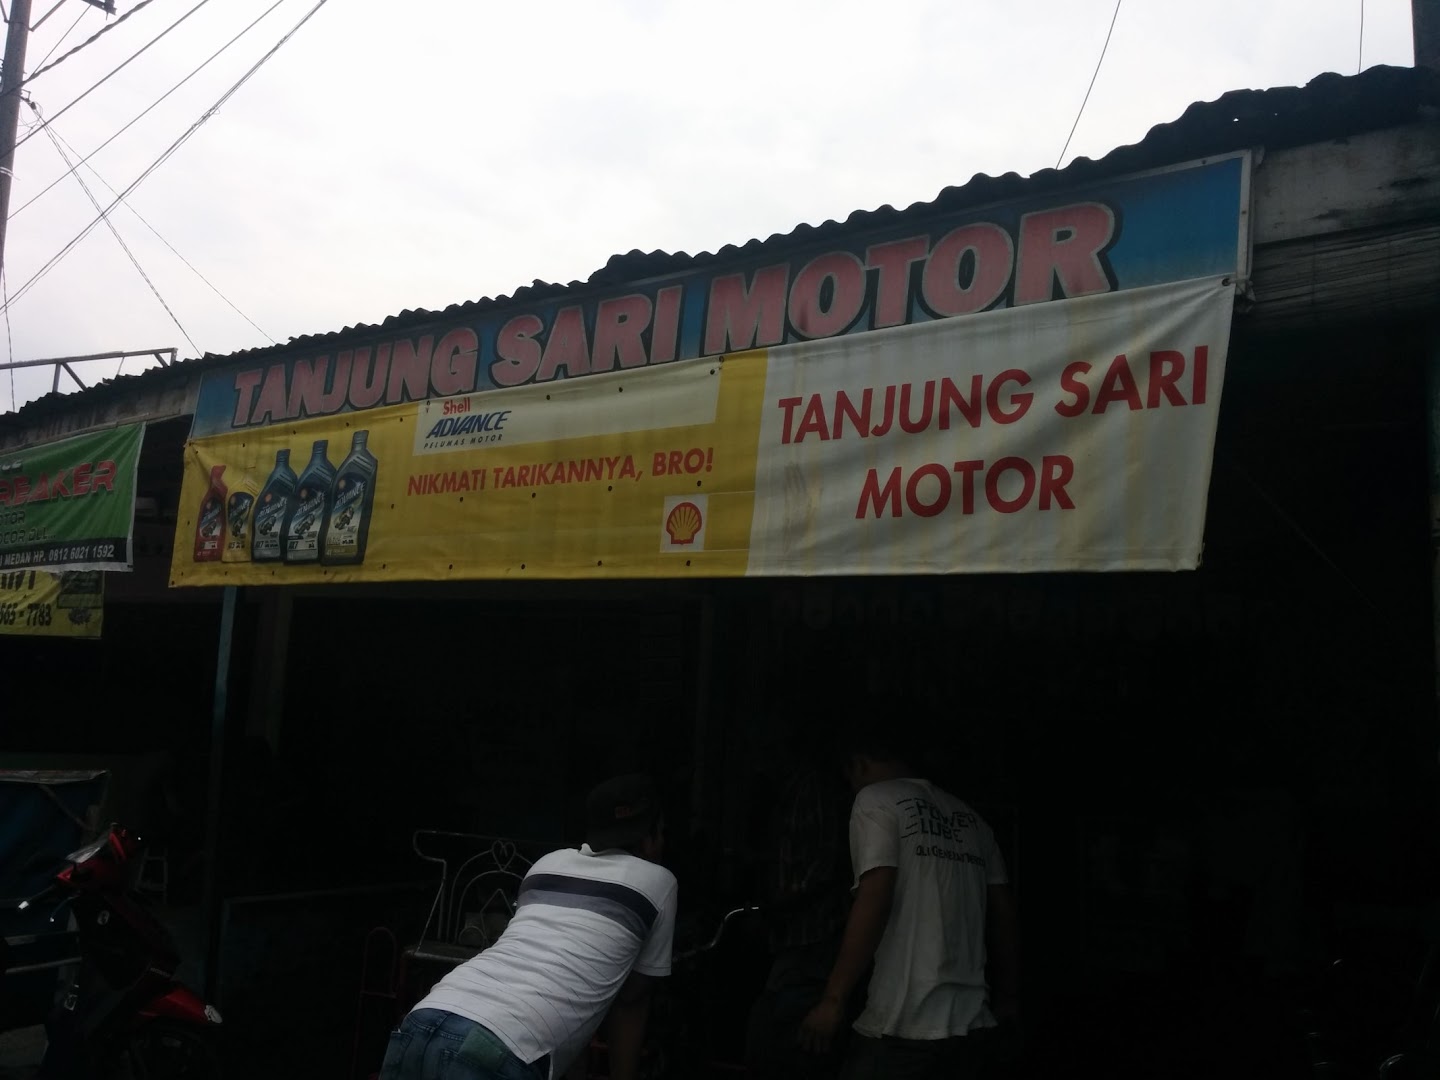 Gambar Tanjung Sari Motor